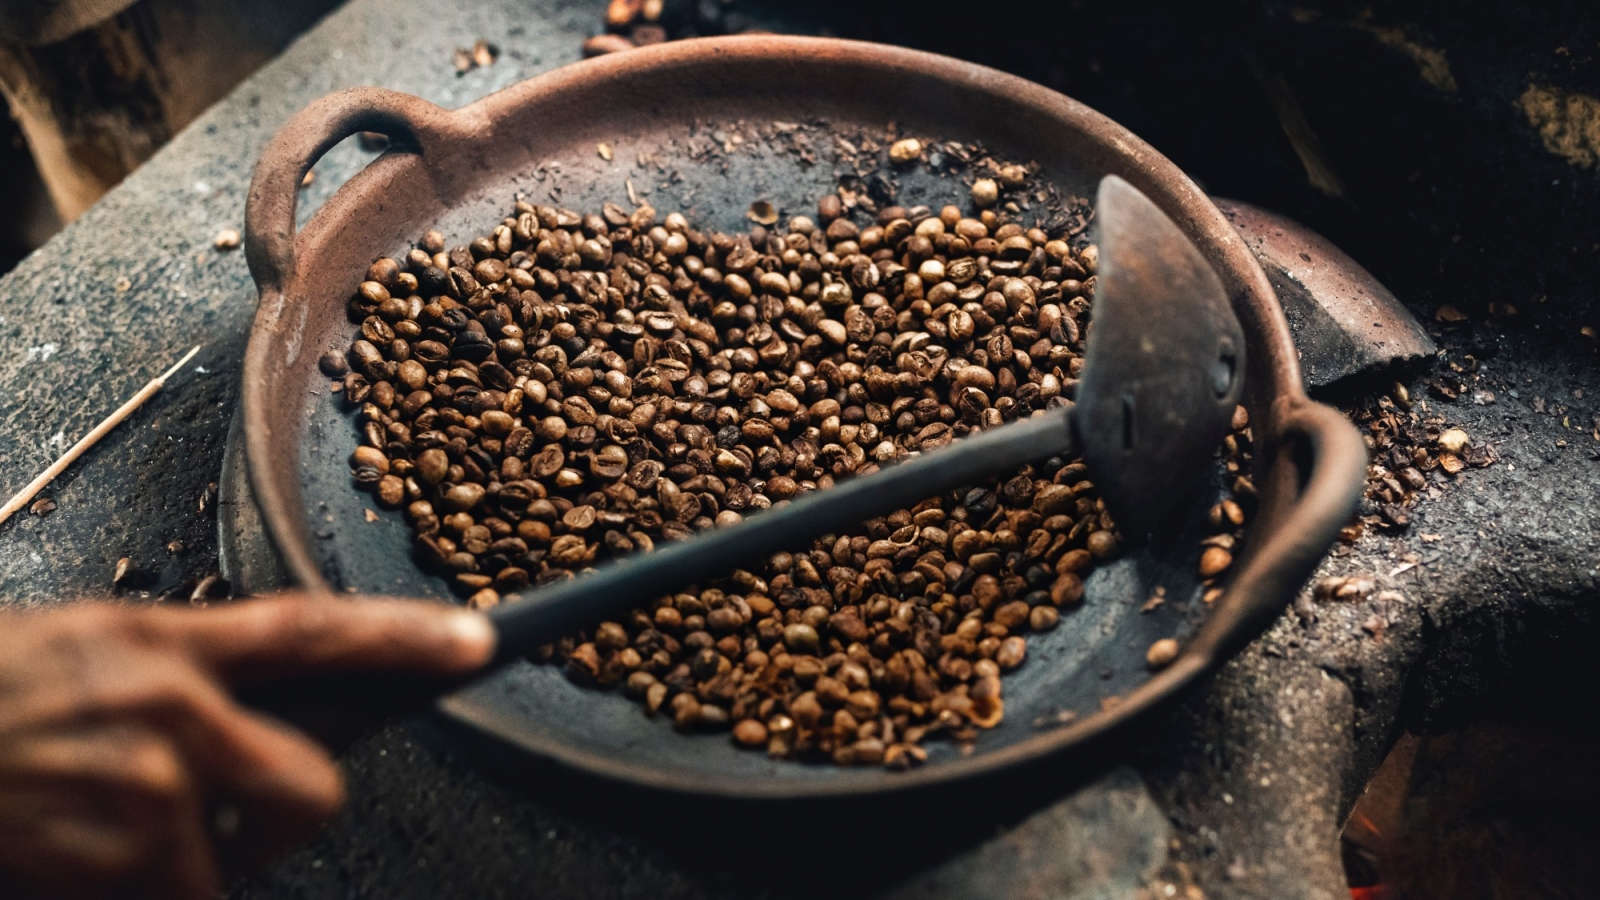 تاریخچه جالب انواع دستگاه روستر یا برشته کردن دانه قهوه